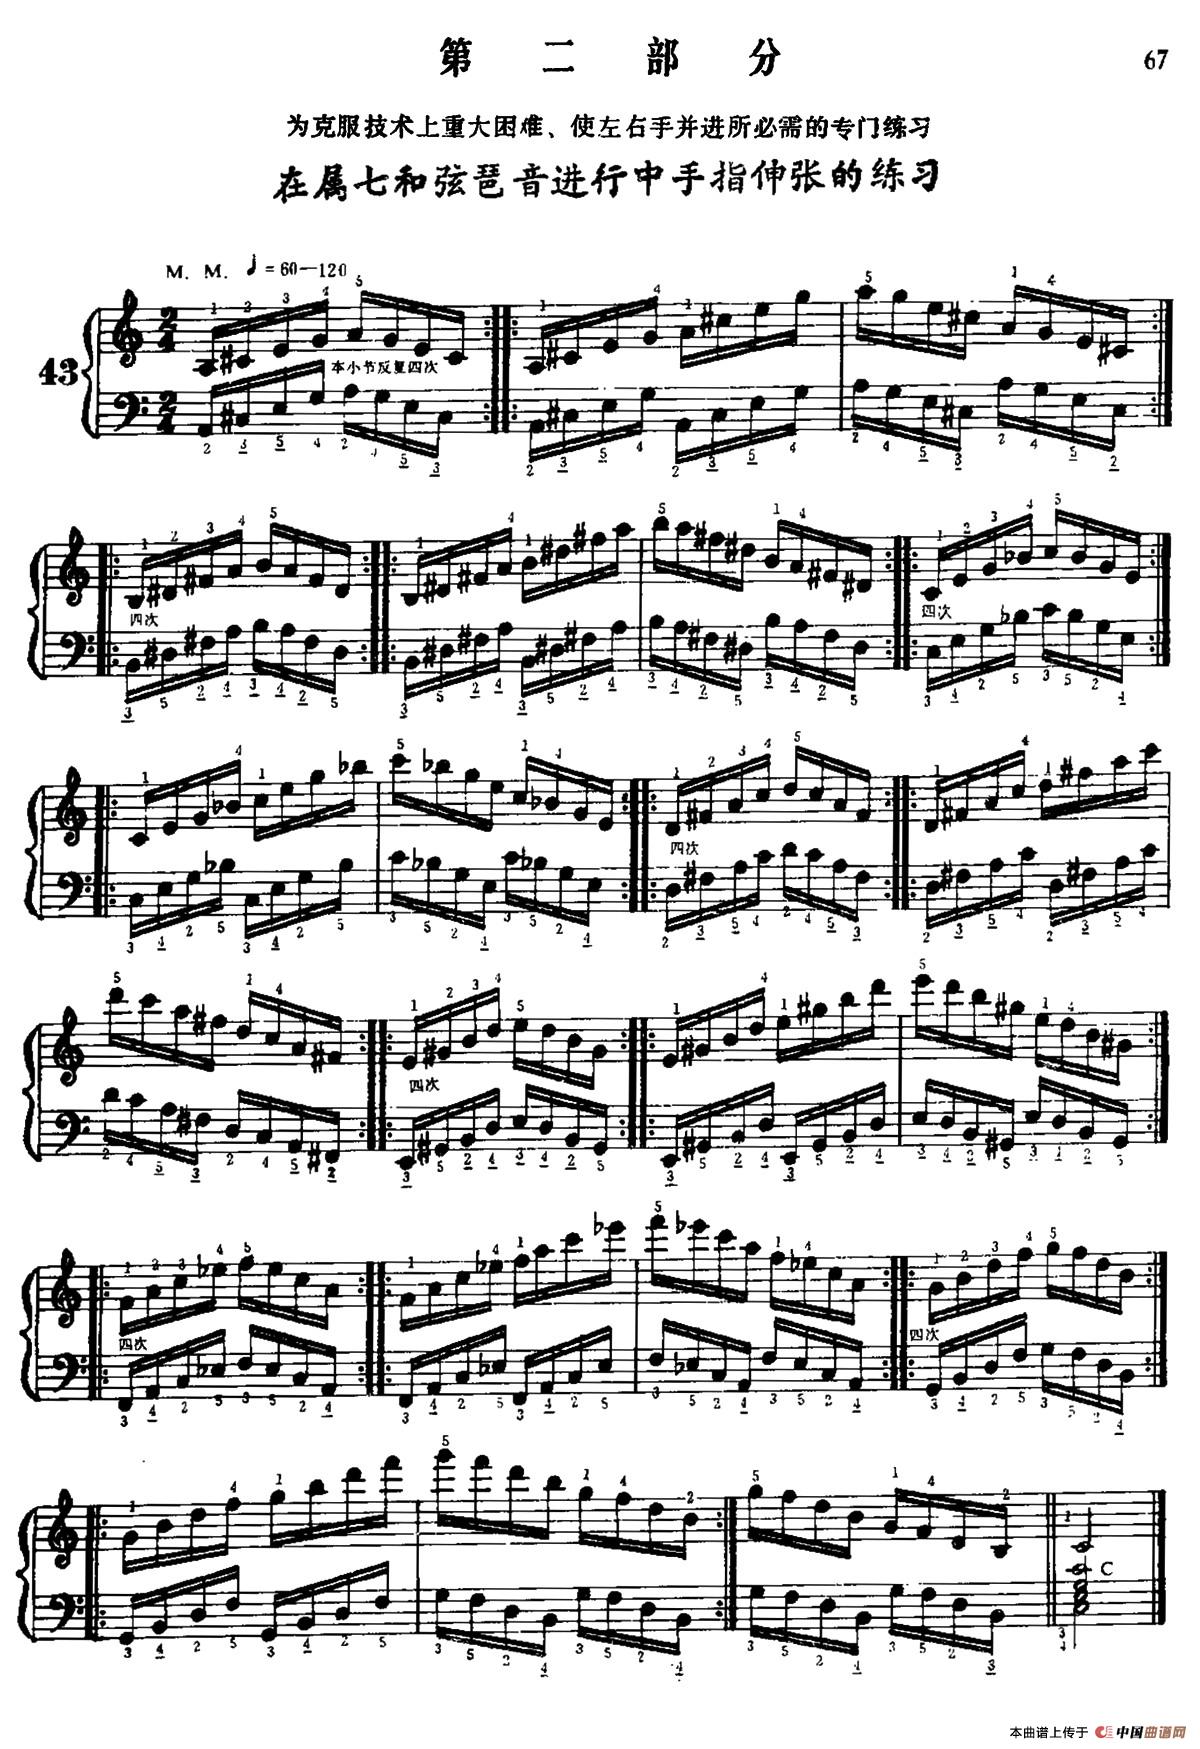 手风琴手指练习 第二部分（在属七和弦琶音进行